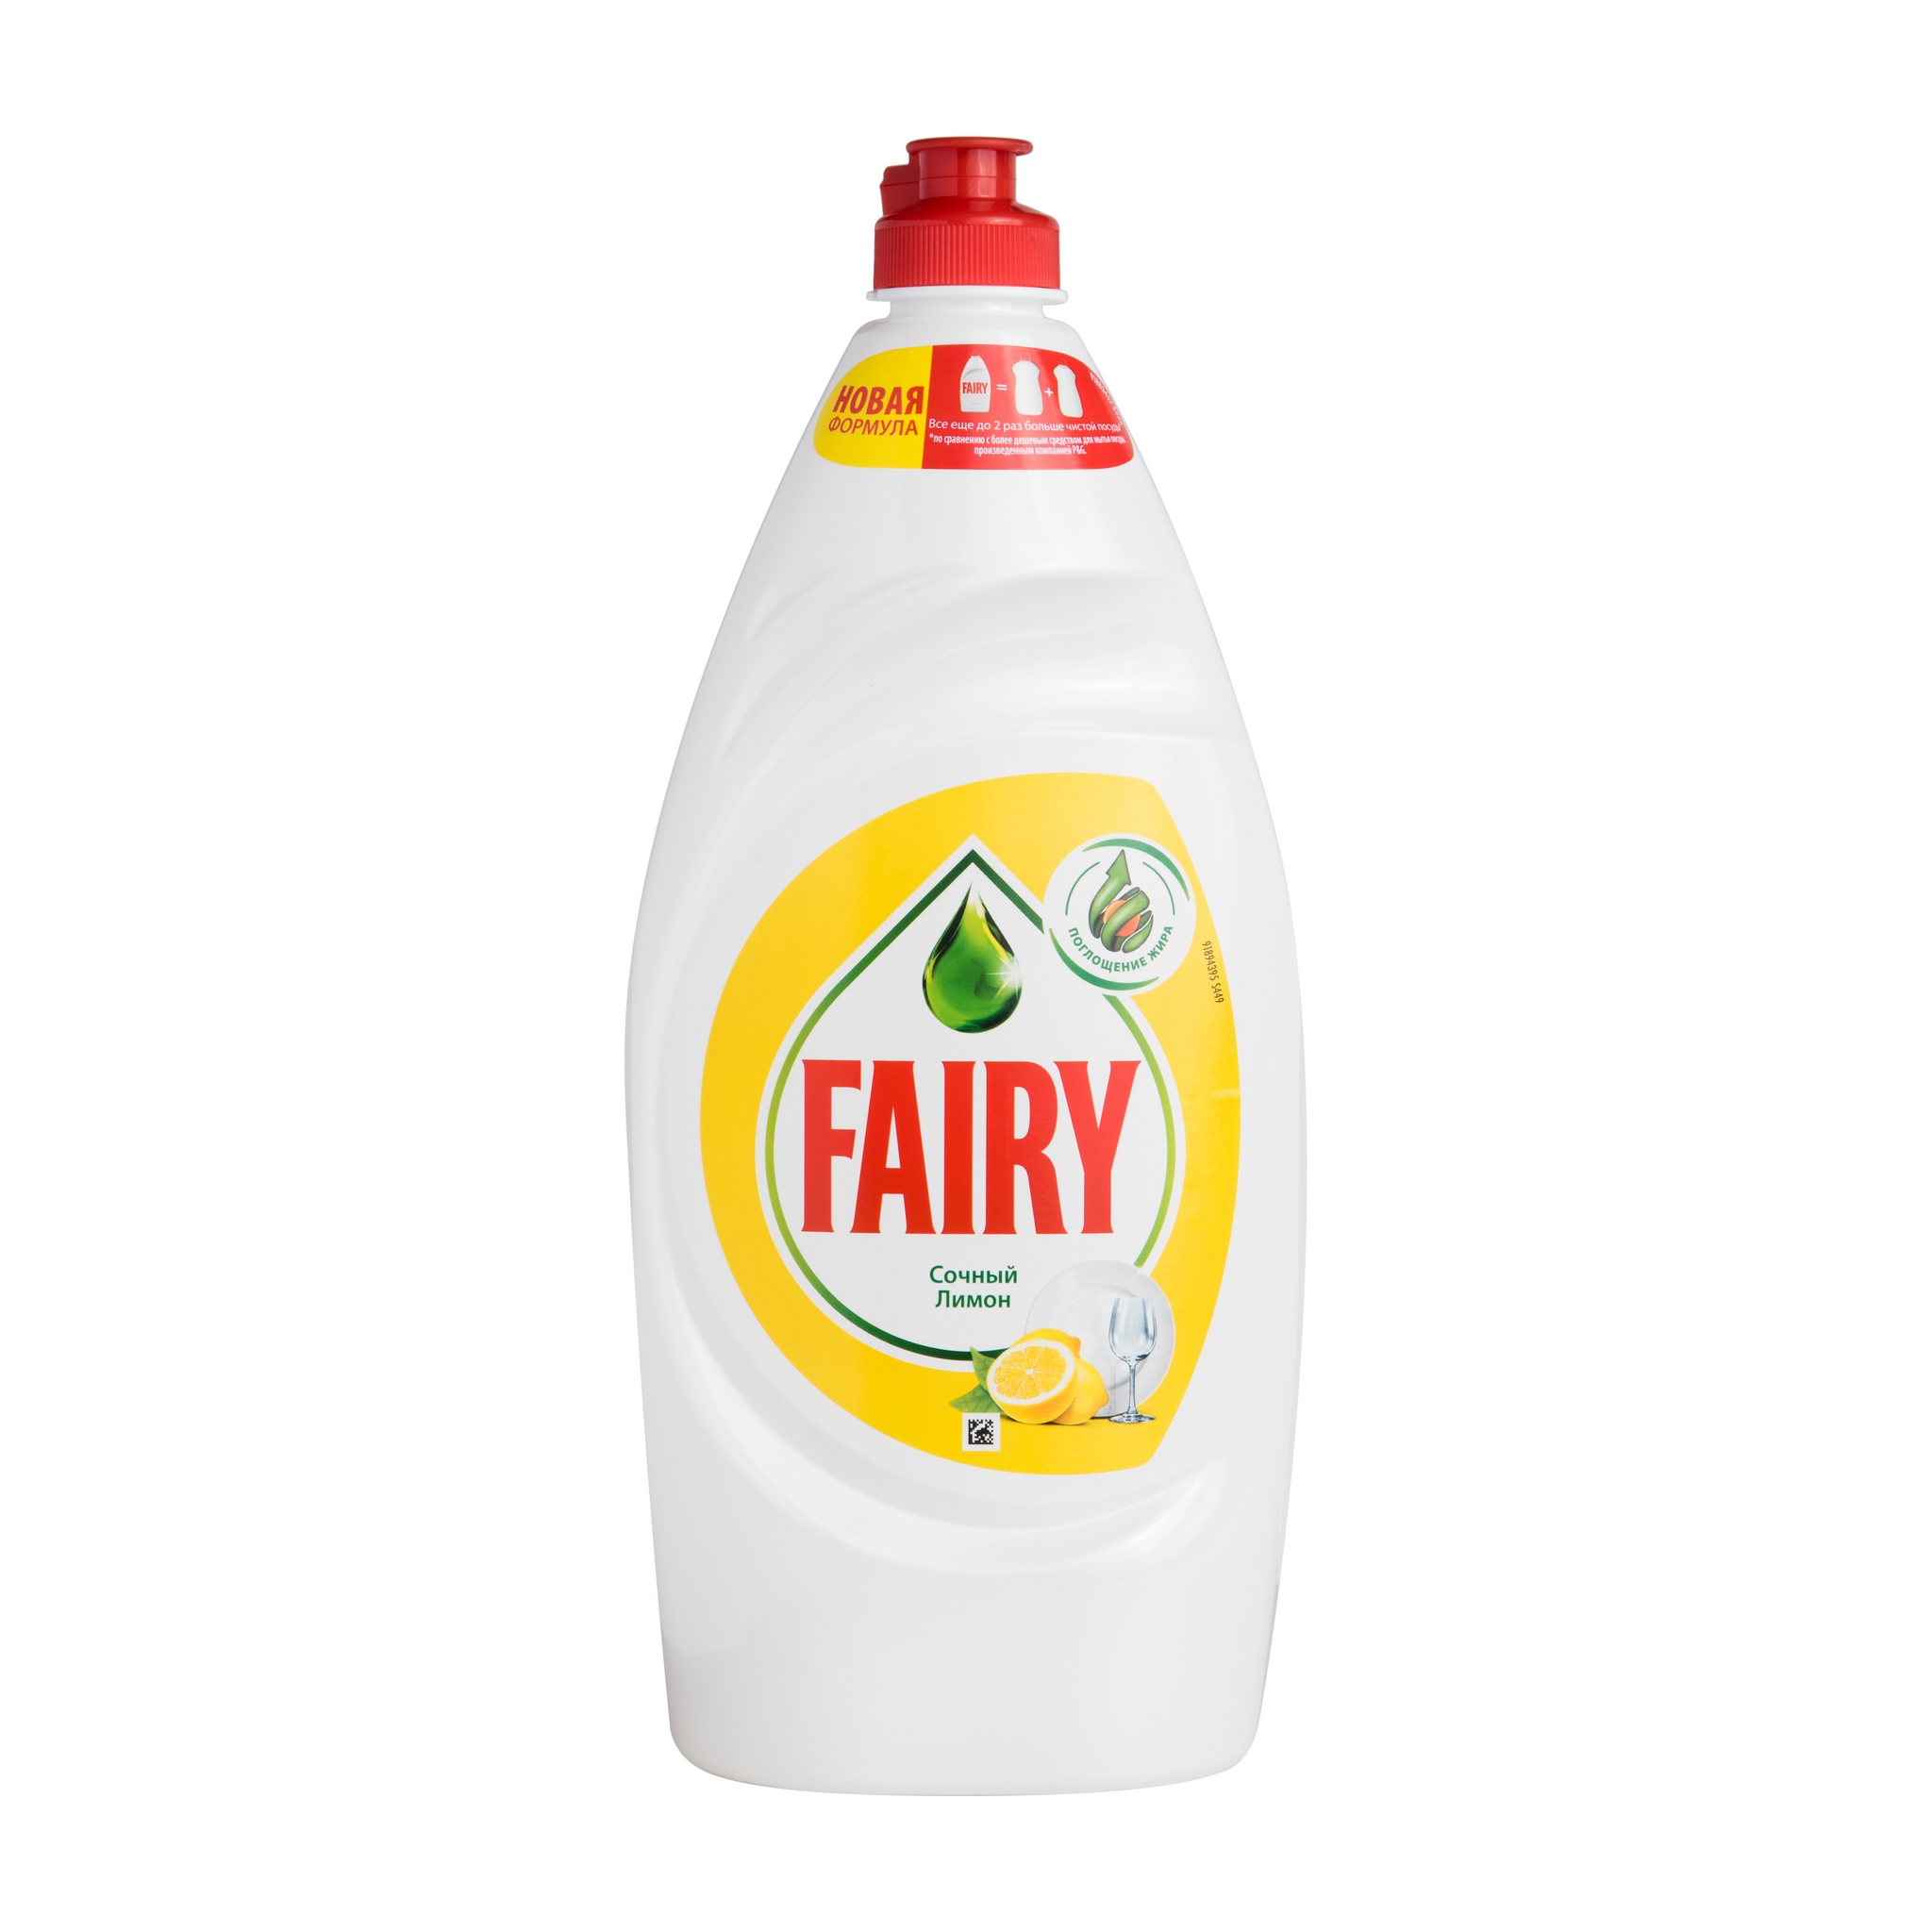  для мытья посуды Fairy Сочный лимон - рейтинг 4,33 по отзывам .